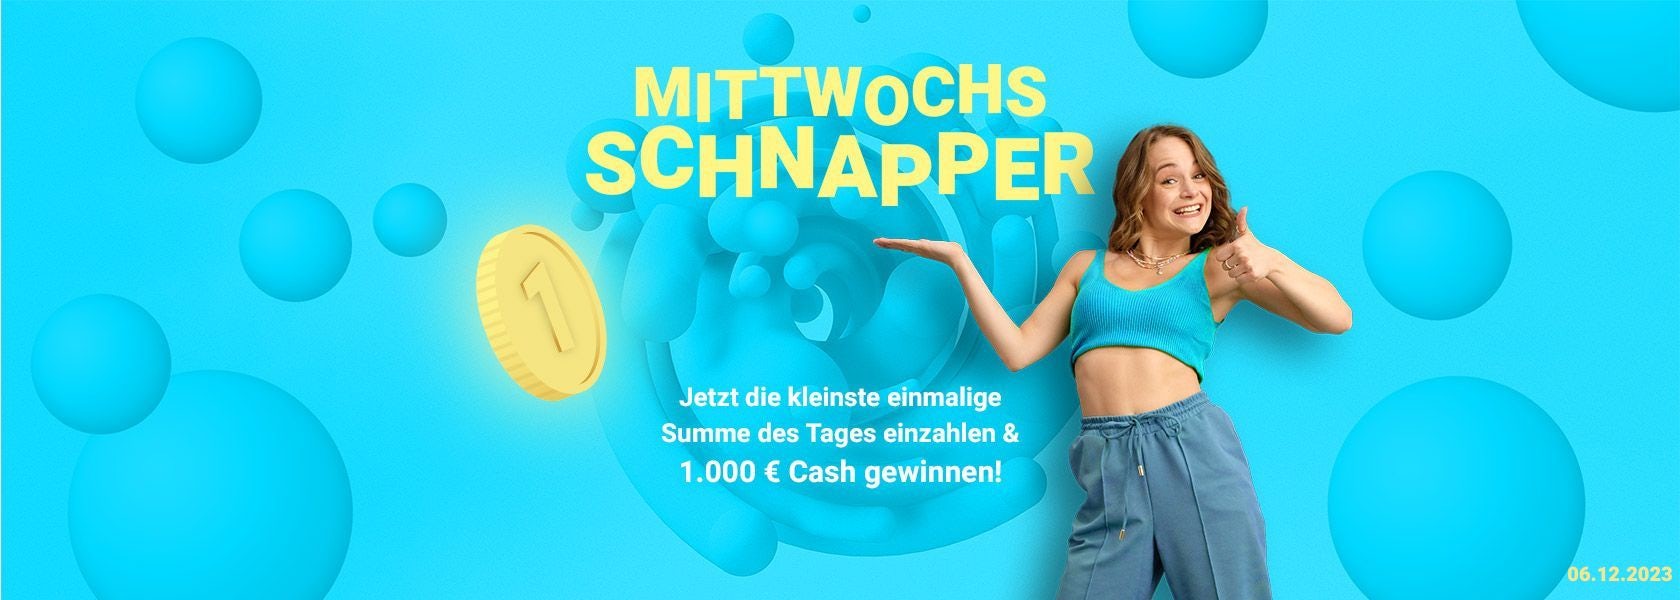 mittwochs-schnapper-bbo-061223